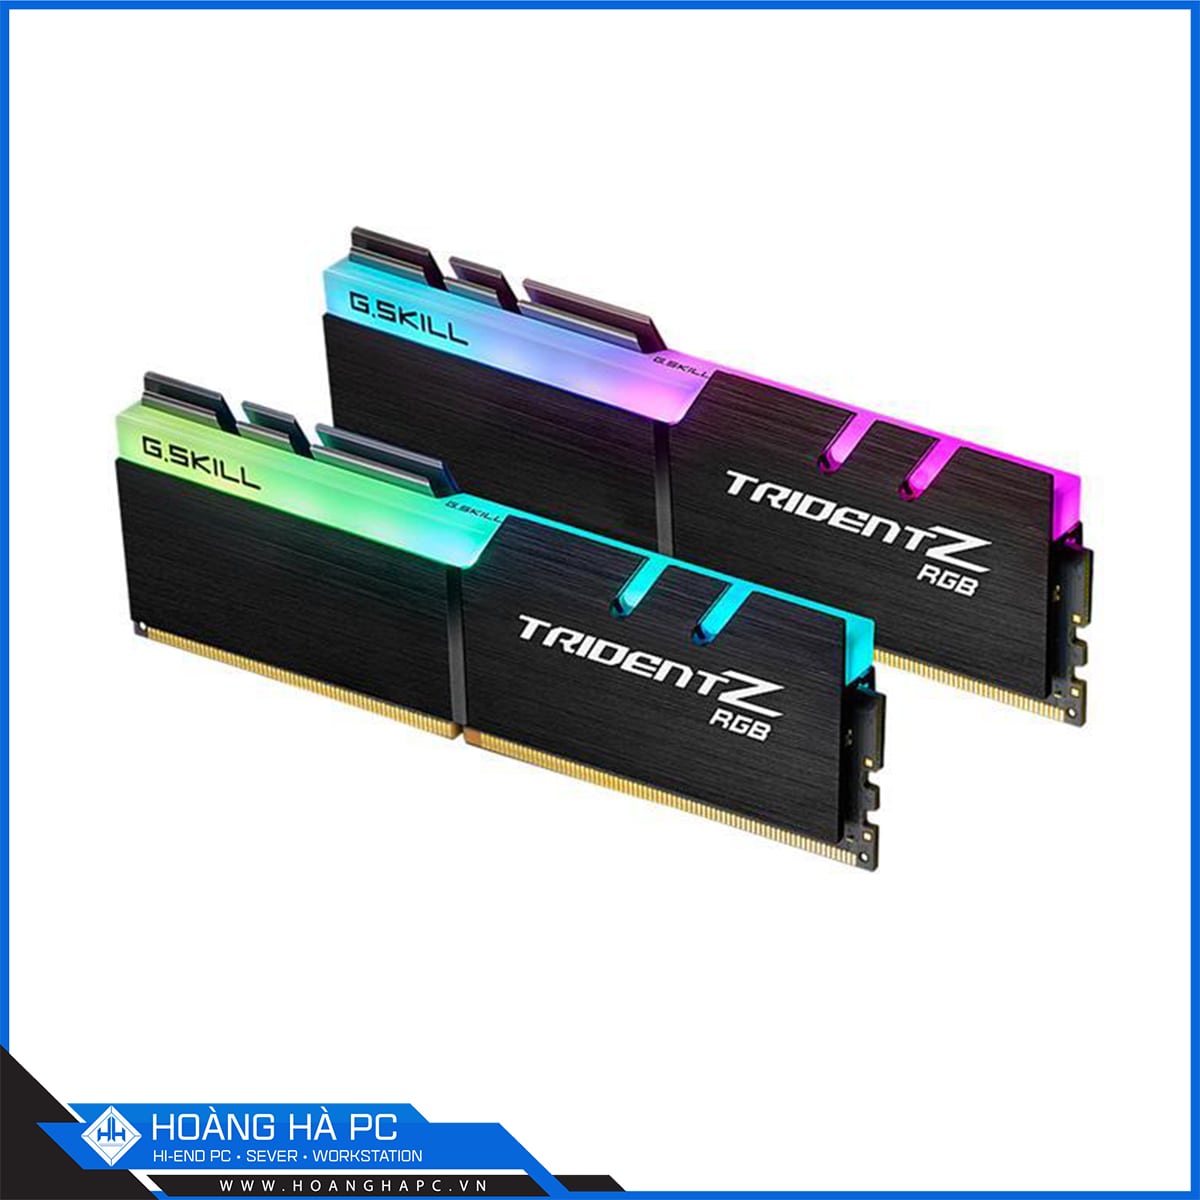 RAM G.Skill TRIDENT Z RGB - 32GB (16GBx2) DDR4 3200MHz